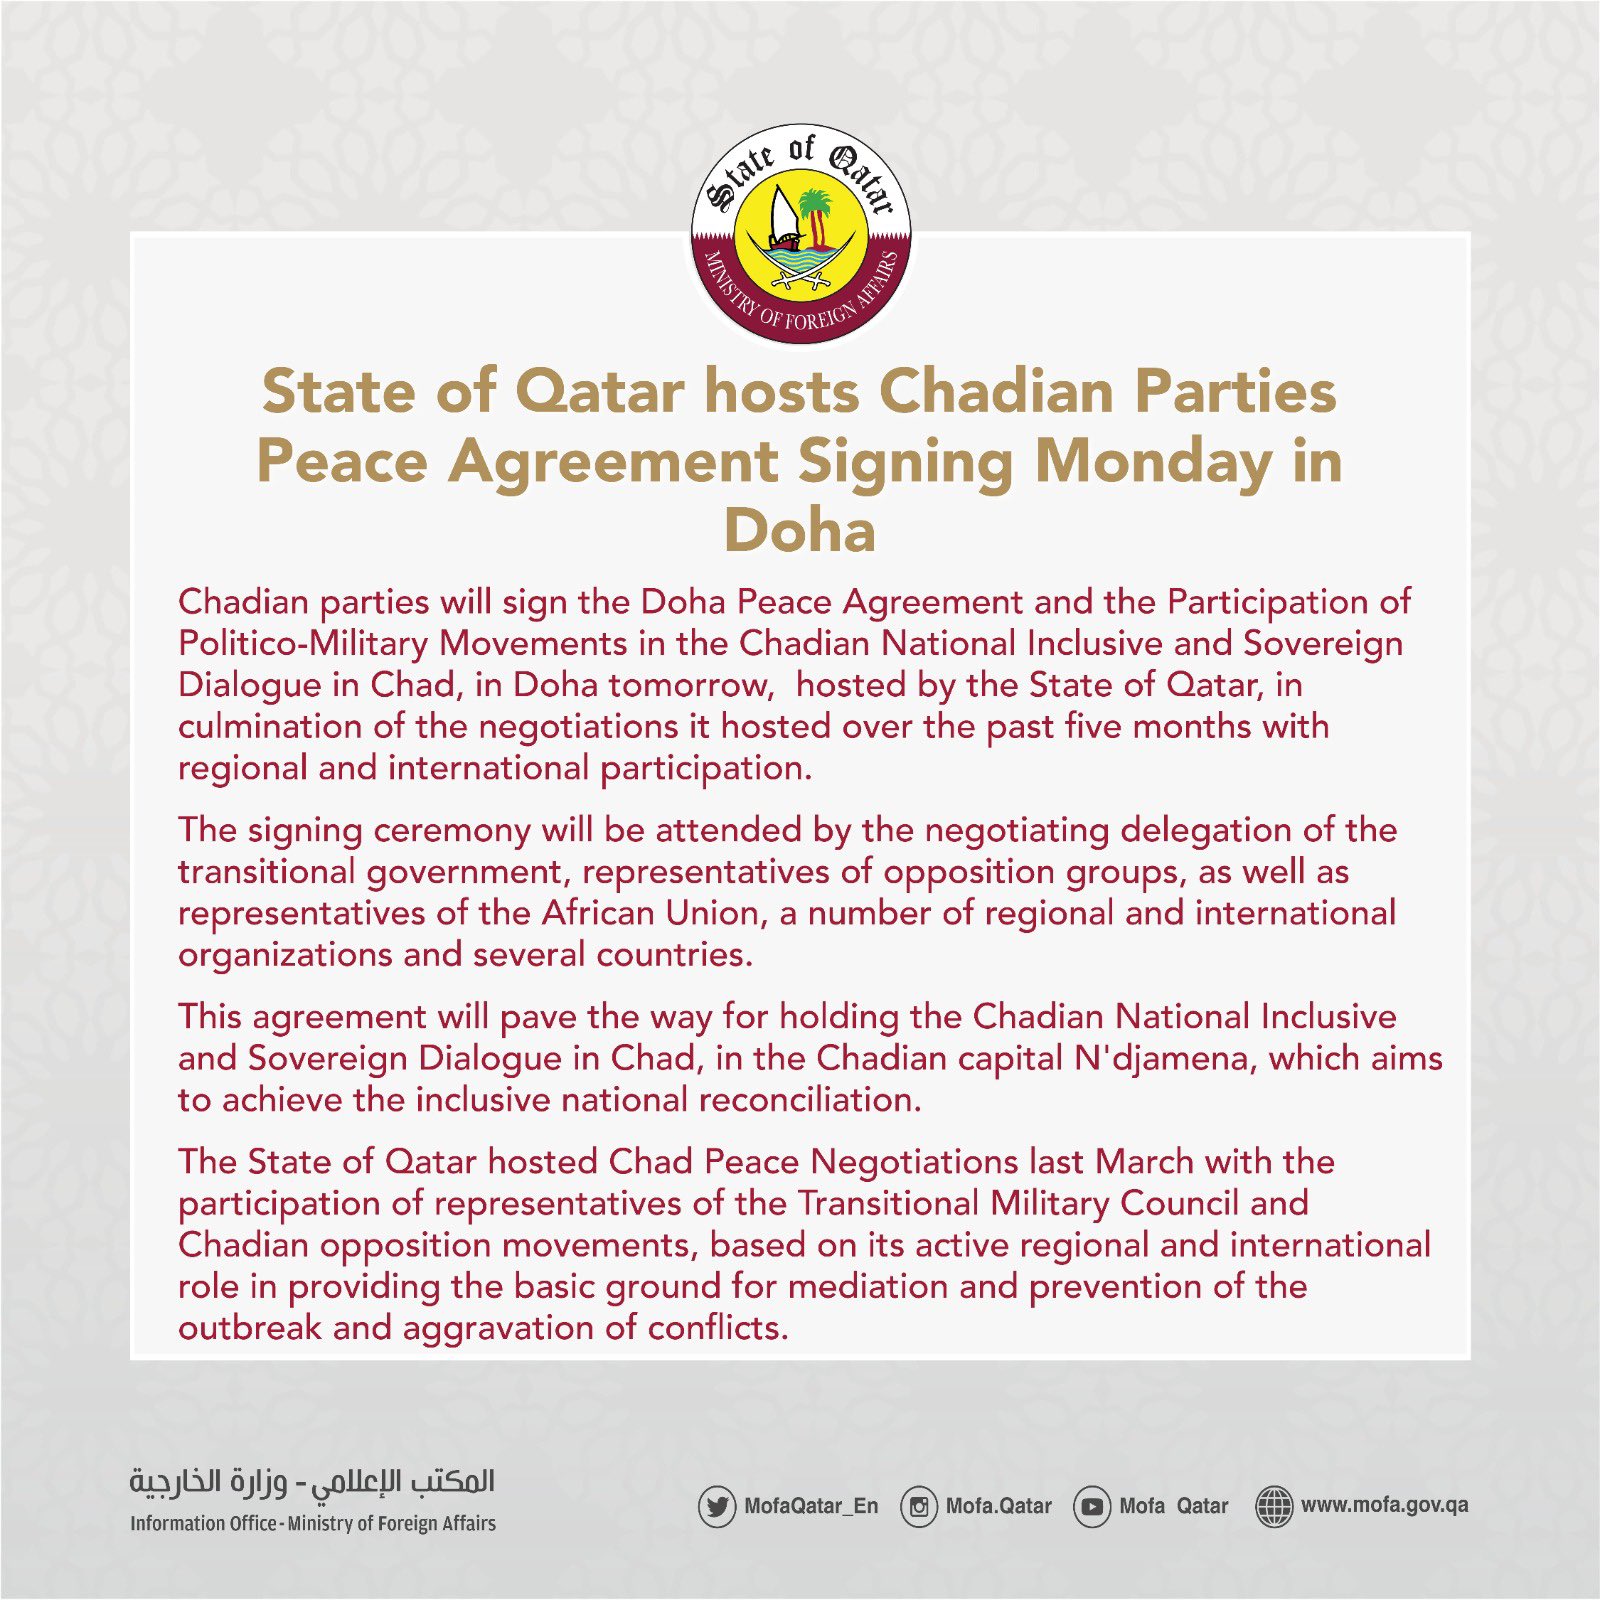 Le Qatar officialise la signature de l’accord de paix entre les parties tchadiennes demain